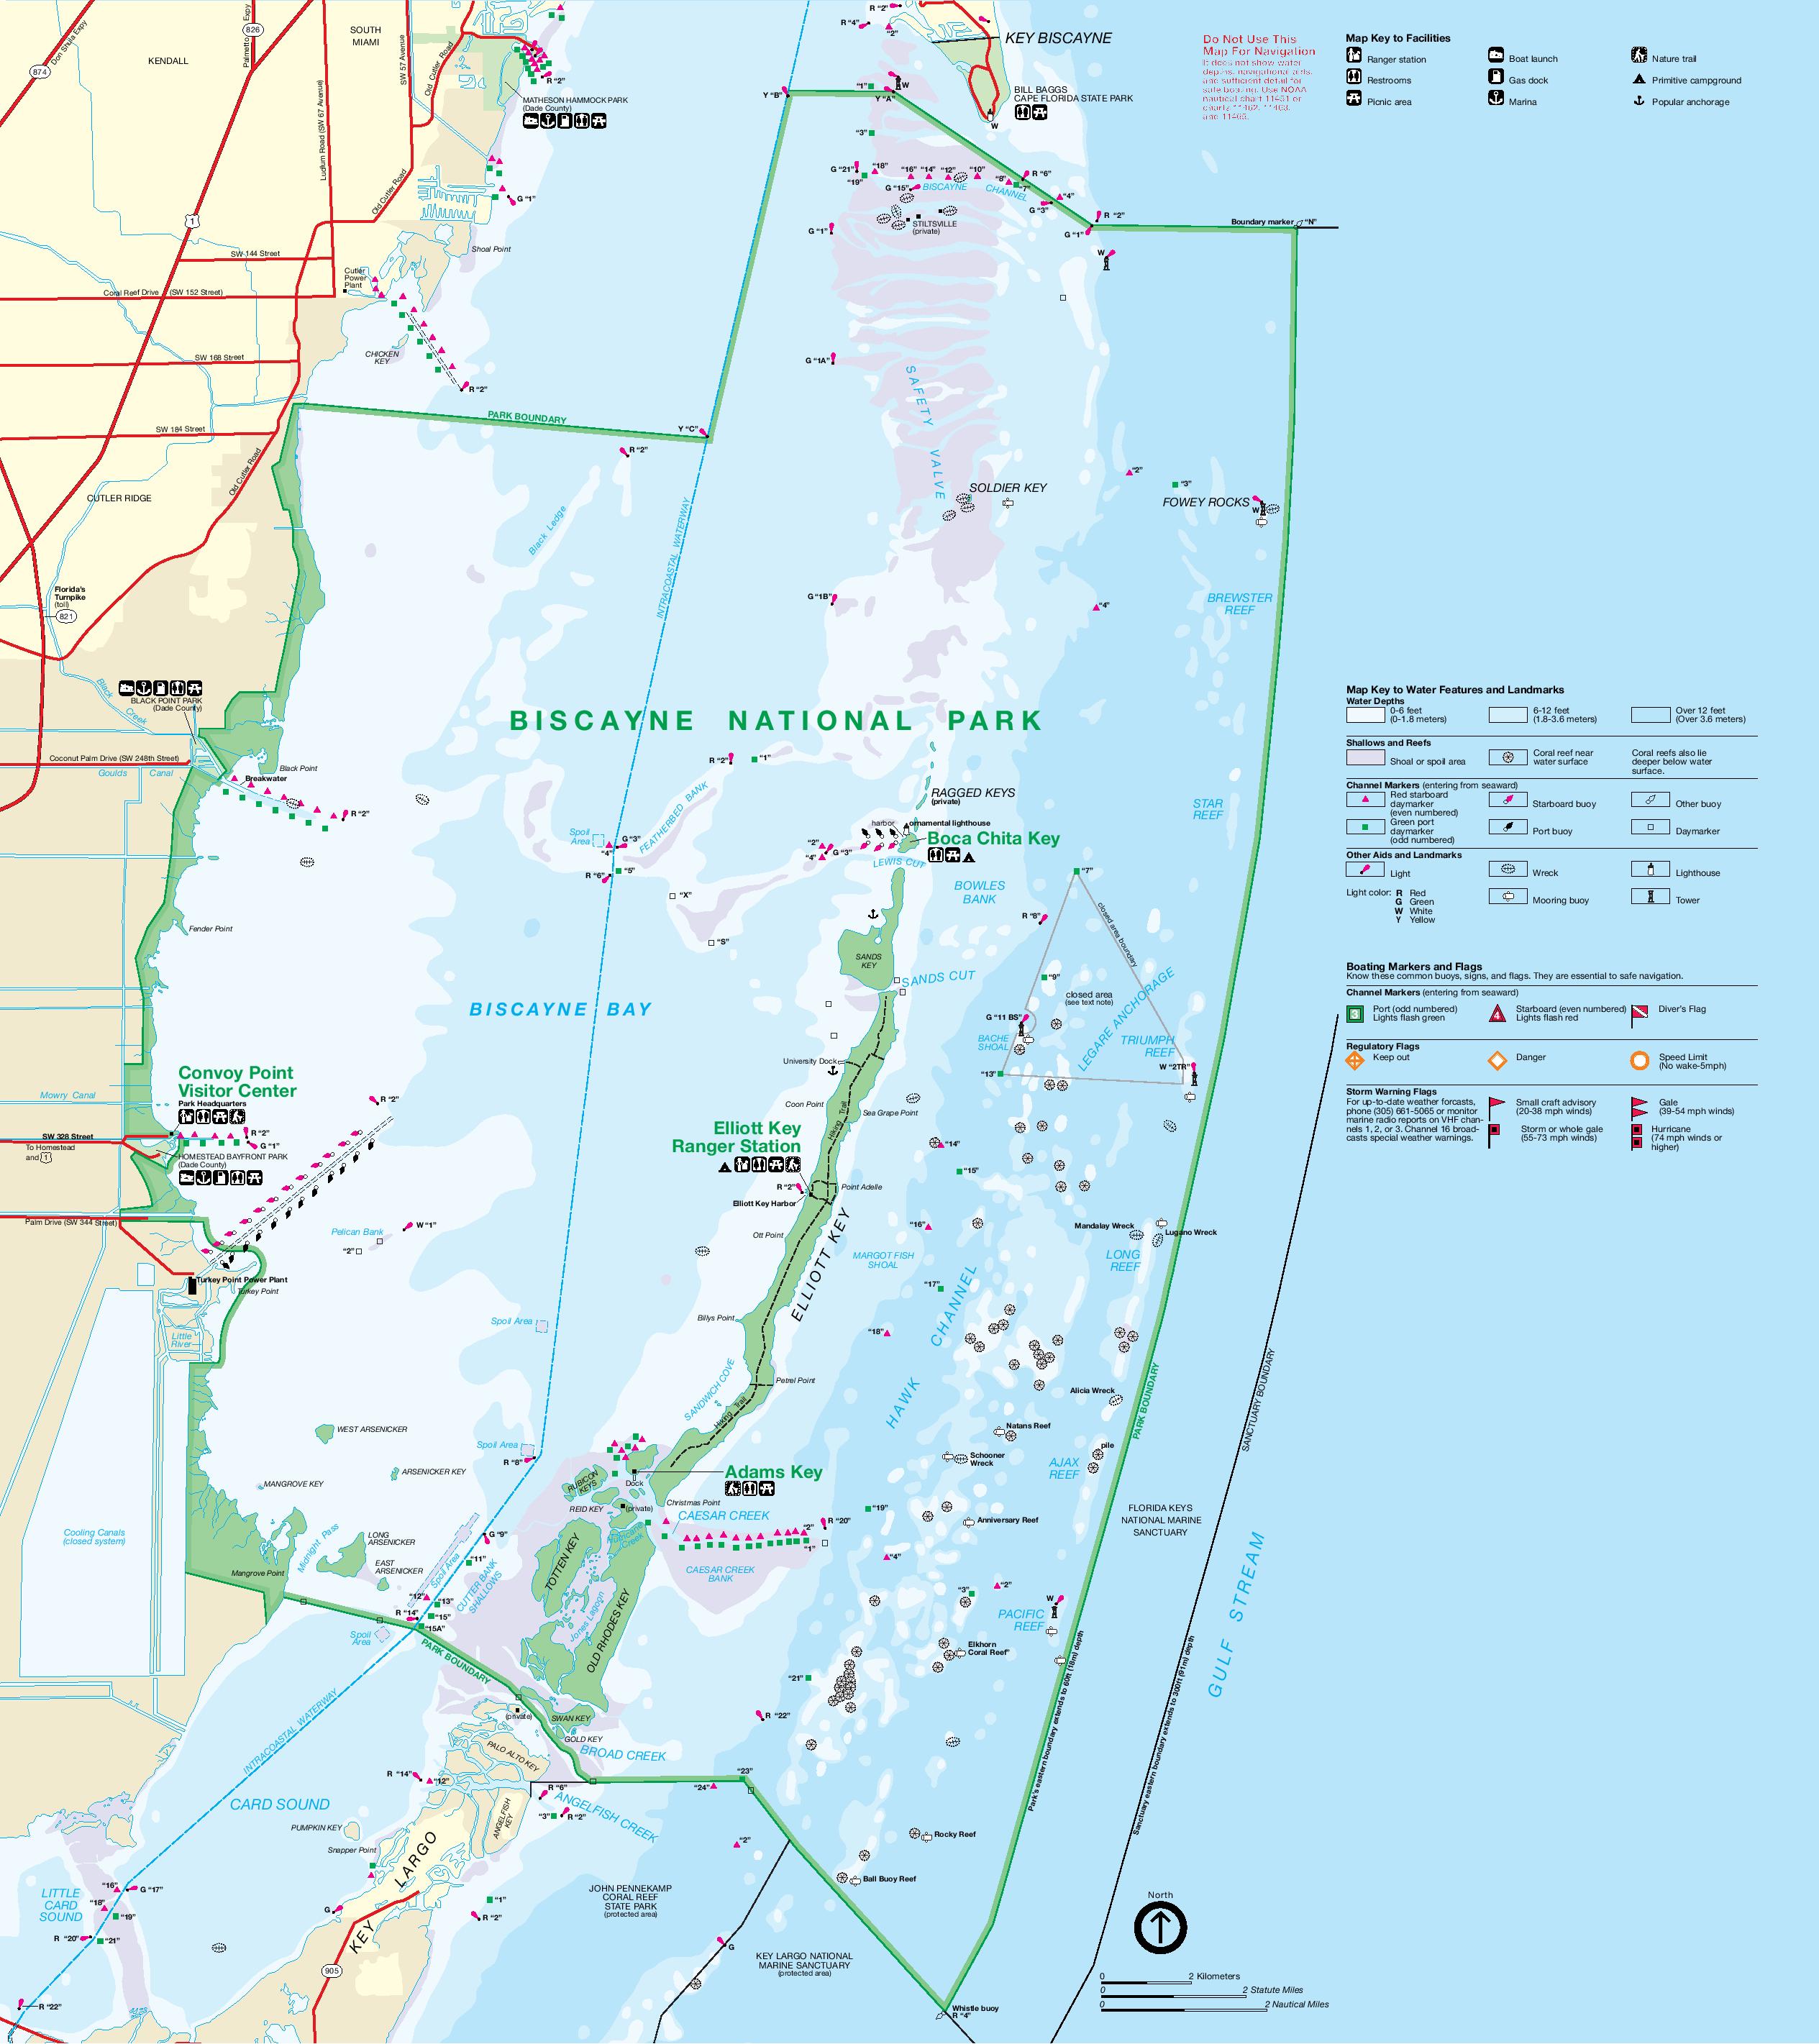 Biscayne National Park Map 